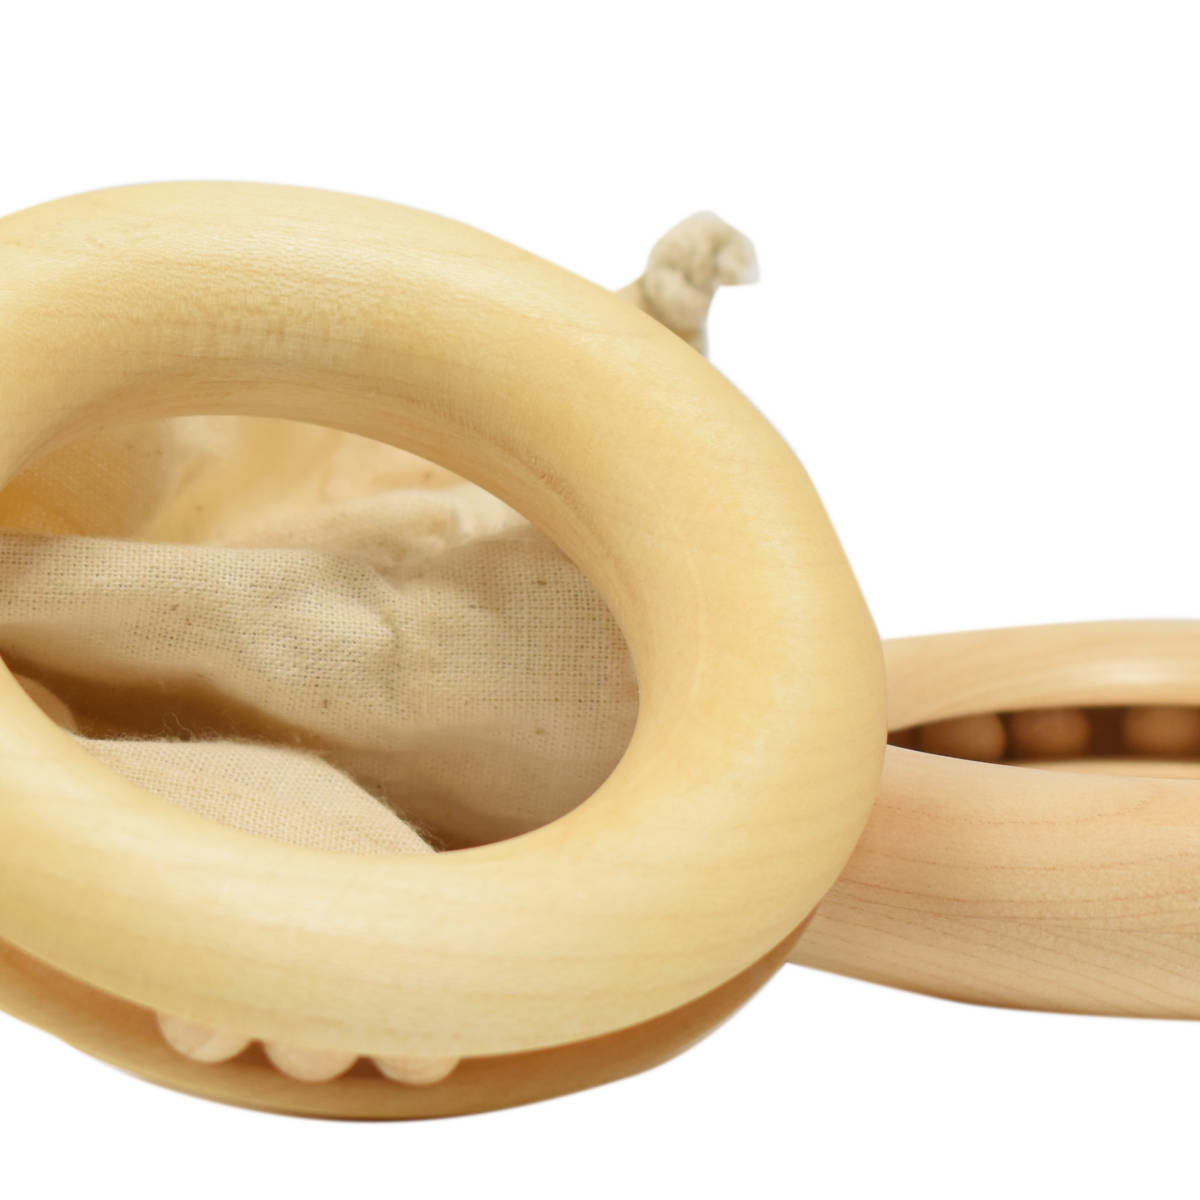 Laufring  'In' aus Holz - ganzheitliches antroprosophisches Spielzeug